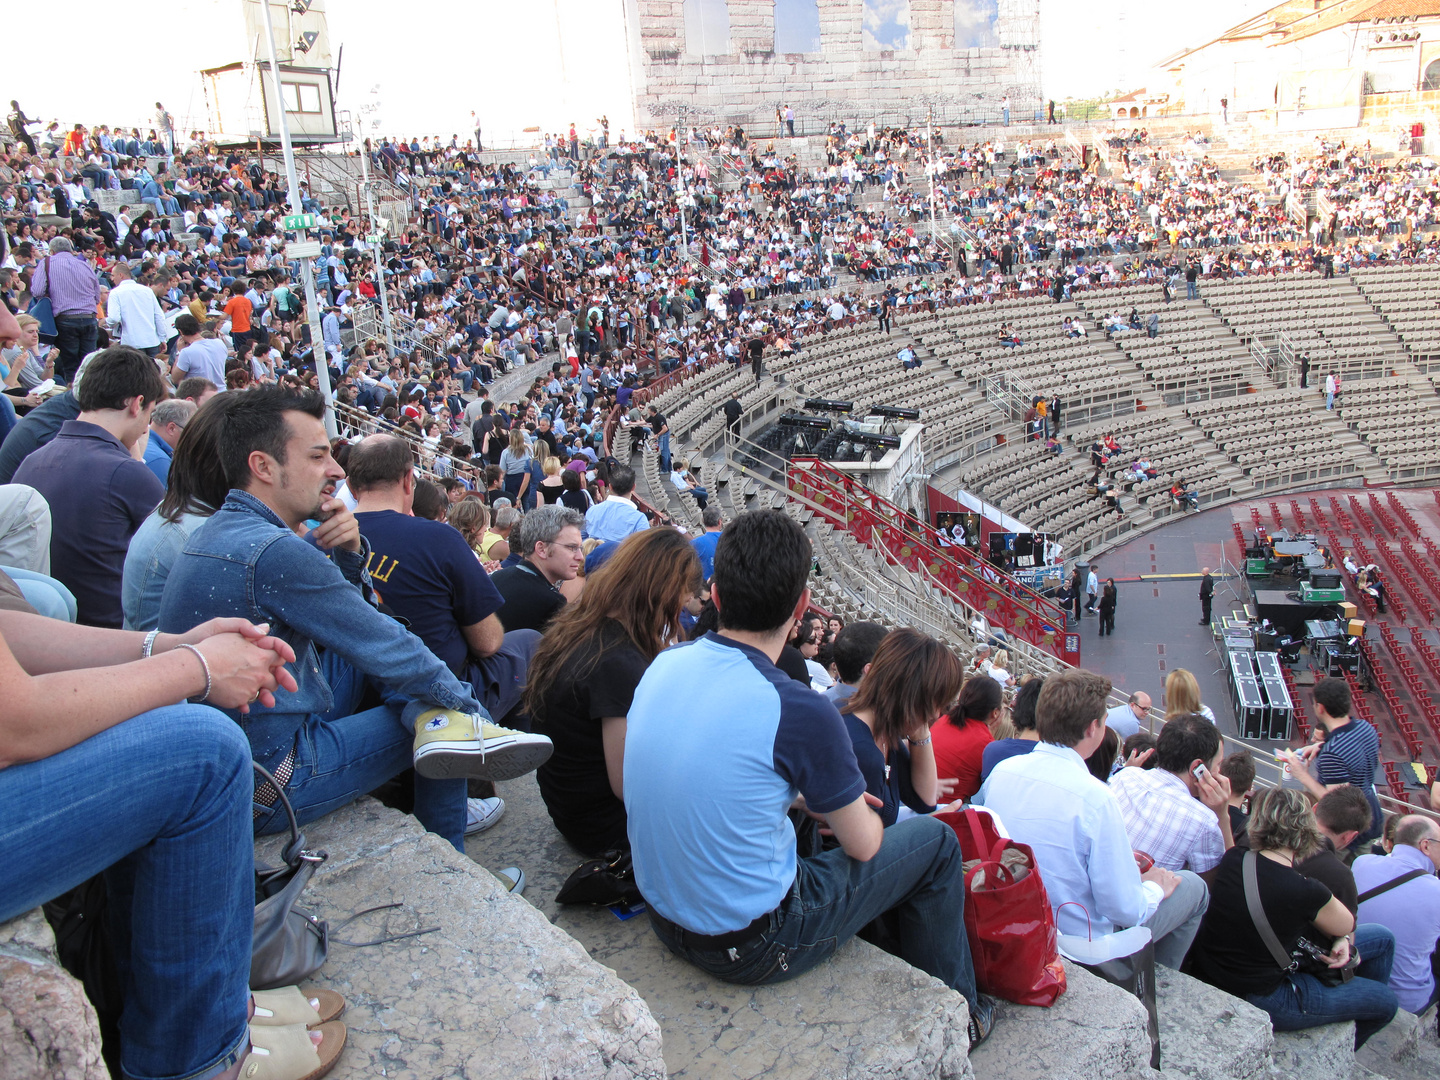 In attesa del concerto di BUBLE' all'Arena di Verona,,,,,,,